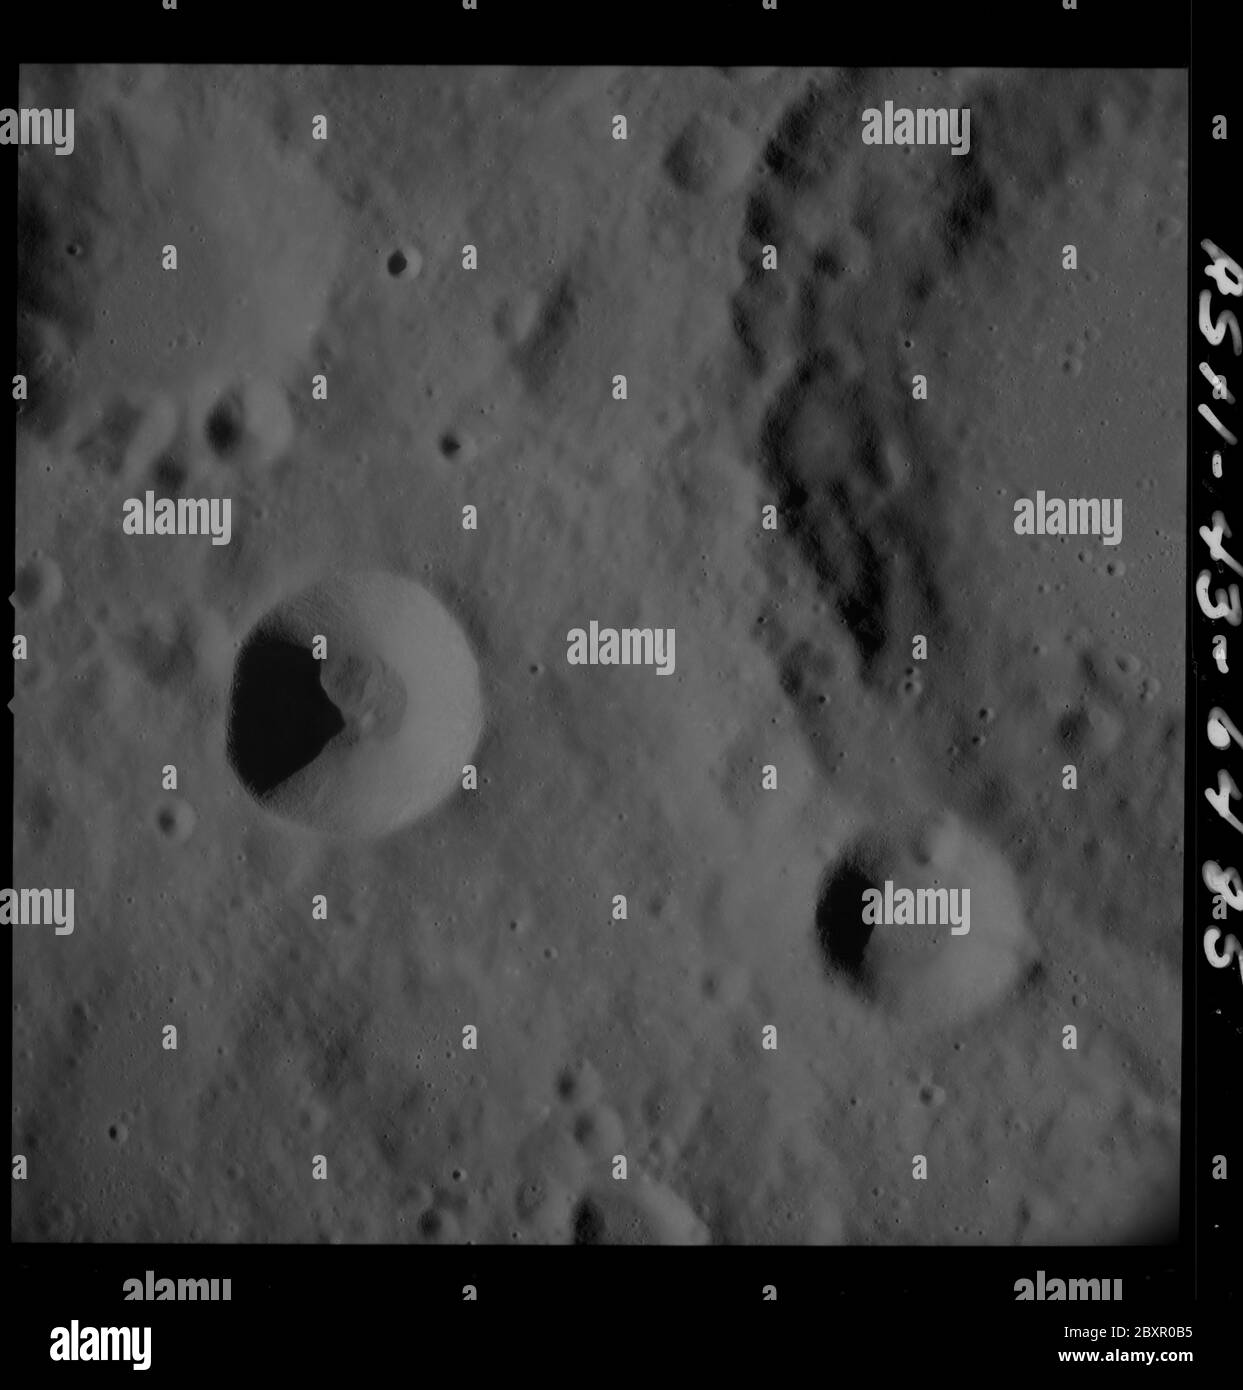 AS11-43-6485 - Apolo 11 - Apolo 11 Misión imagen - Luna, Cráter 225; alcance y contenido: La base de datos original describe esto como: Descripción: Vista de la Luna, Cráter 225, oficialmente llamado Coriolis. Toma de imágenes del módulo de mando a una altitud orbital de aproximadamente 60 millas náuticas durante la Misión Apollo 11. La revista original fue etiquetada como T. Film Type: 3400 Negro/Blanco Panatomic-X película sobre una base de poliéster 2.5 mil estar tomada con una lente de 80 mm. Escala aproximada de fotos: 1:1,472,800. Latitud del punto principal 0 grados, longitud 170 grados este. El solapamiento de la parte inferior es 0%%. El ángulo del sol es medio Foto de stock